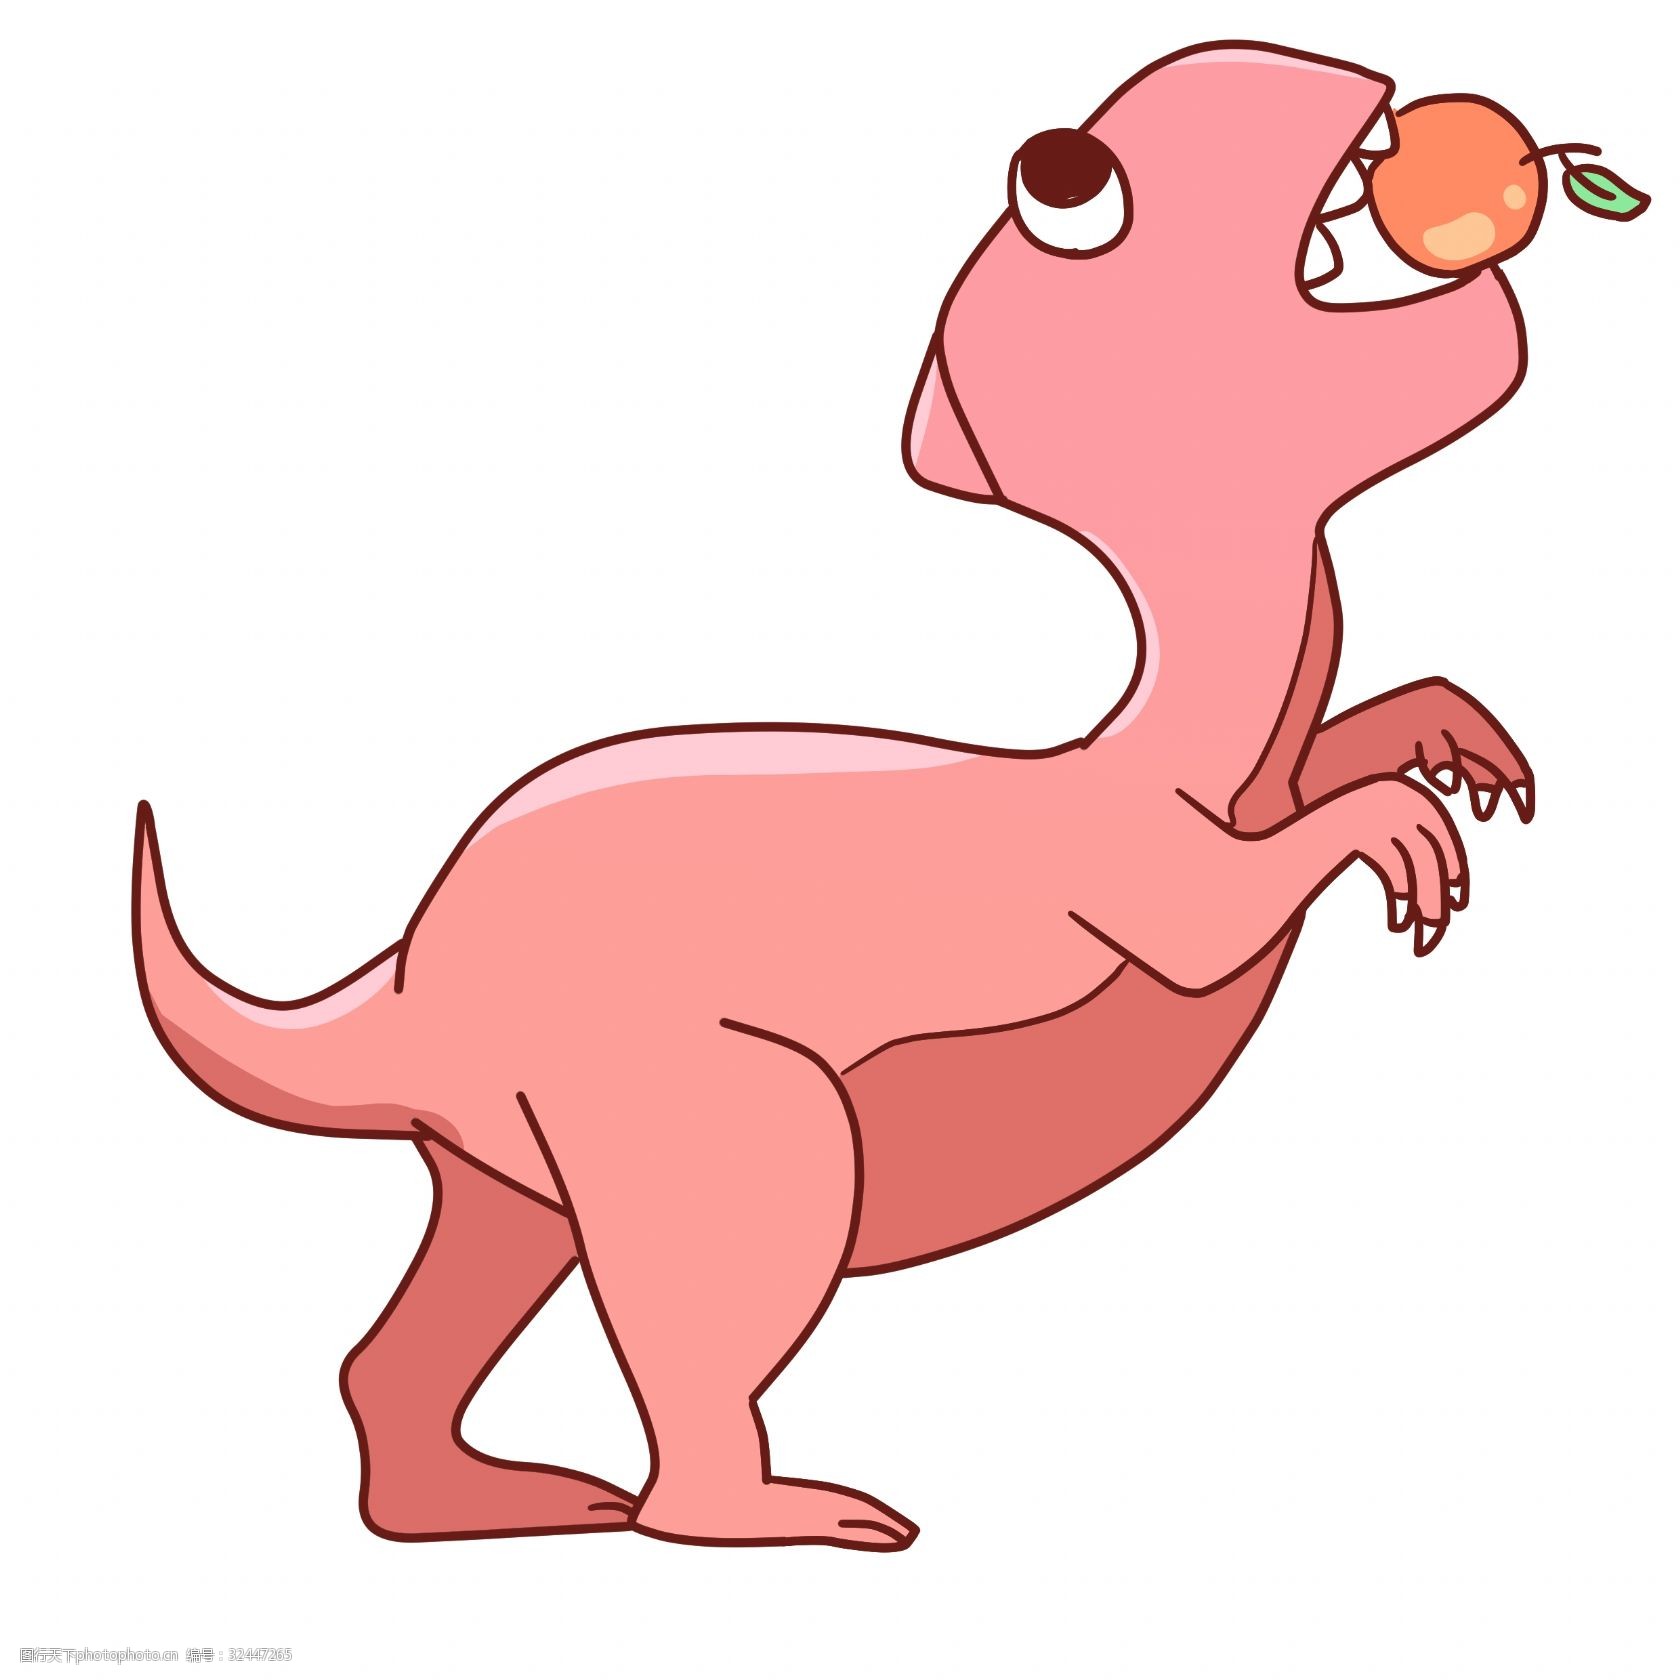 关键词:吃东西的恐龙插画 粉色的恐龙 卡通插画 恐龙插画 动物插画